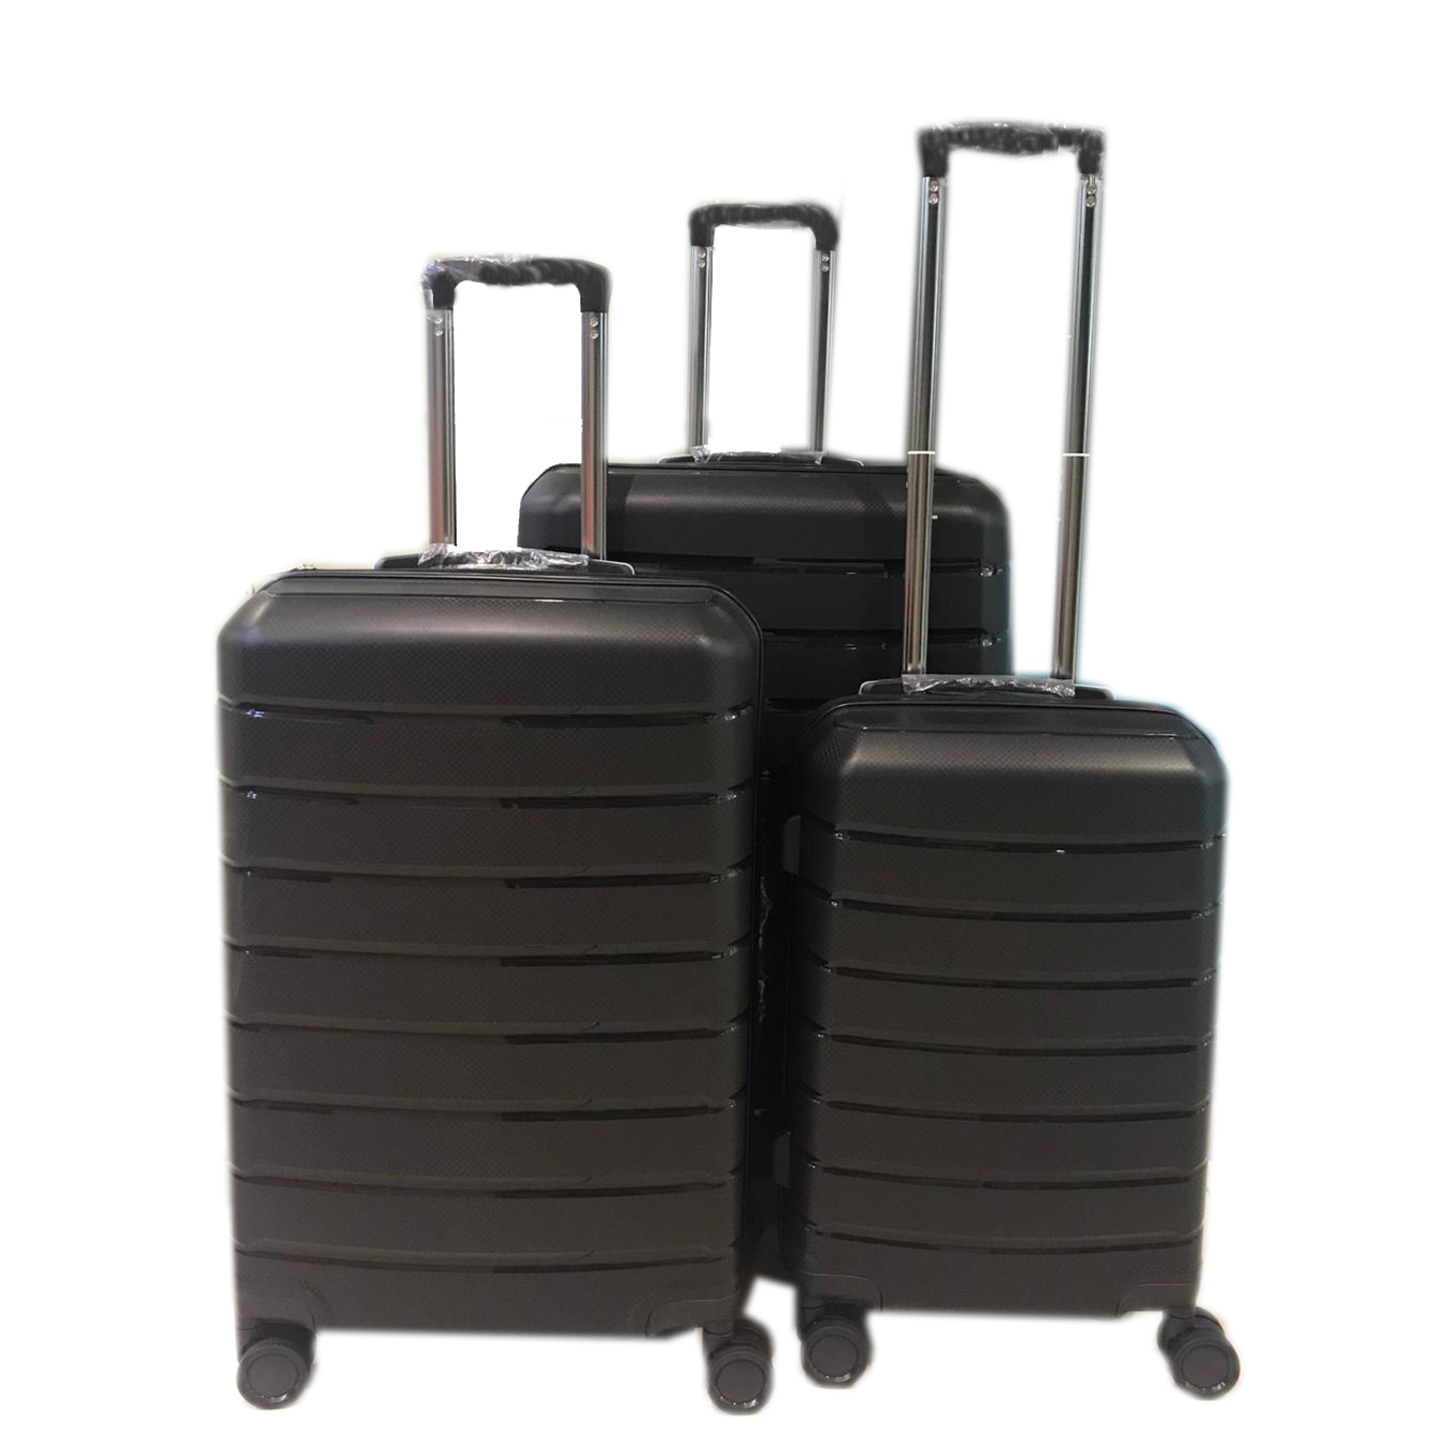 UB-69 Elegant Hard Box Luggage